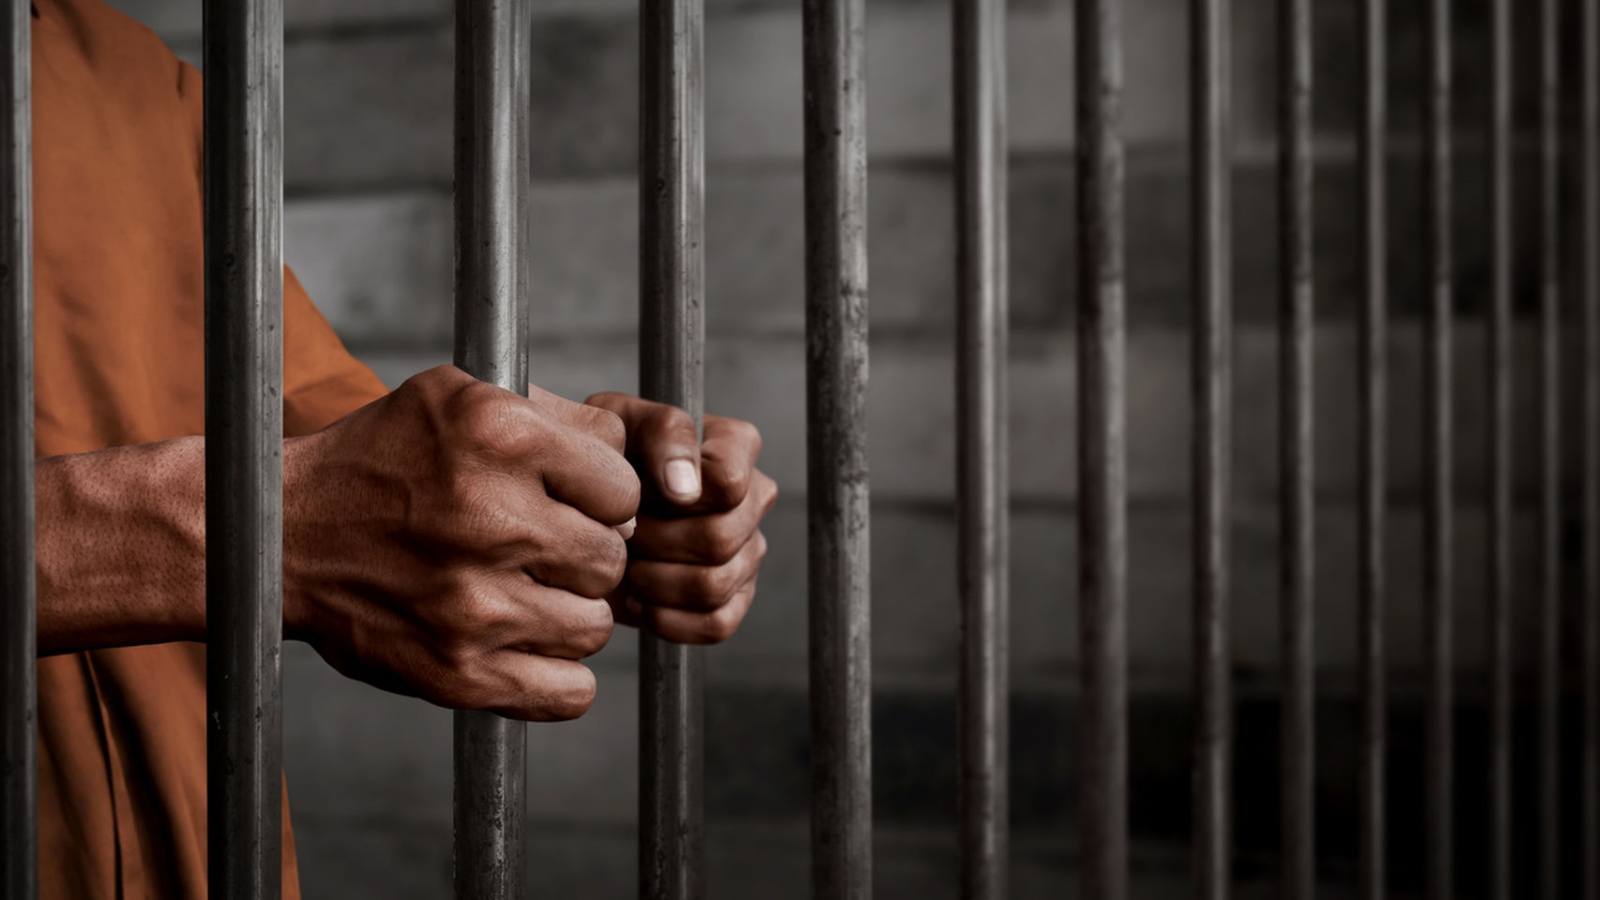 El 29 de julio, AMLO anunció su intención de firmar un decreto para liberar a presos con el objetivo de ayudar a personas condenadas por delitos menores.